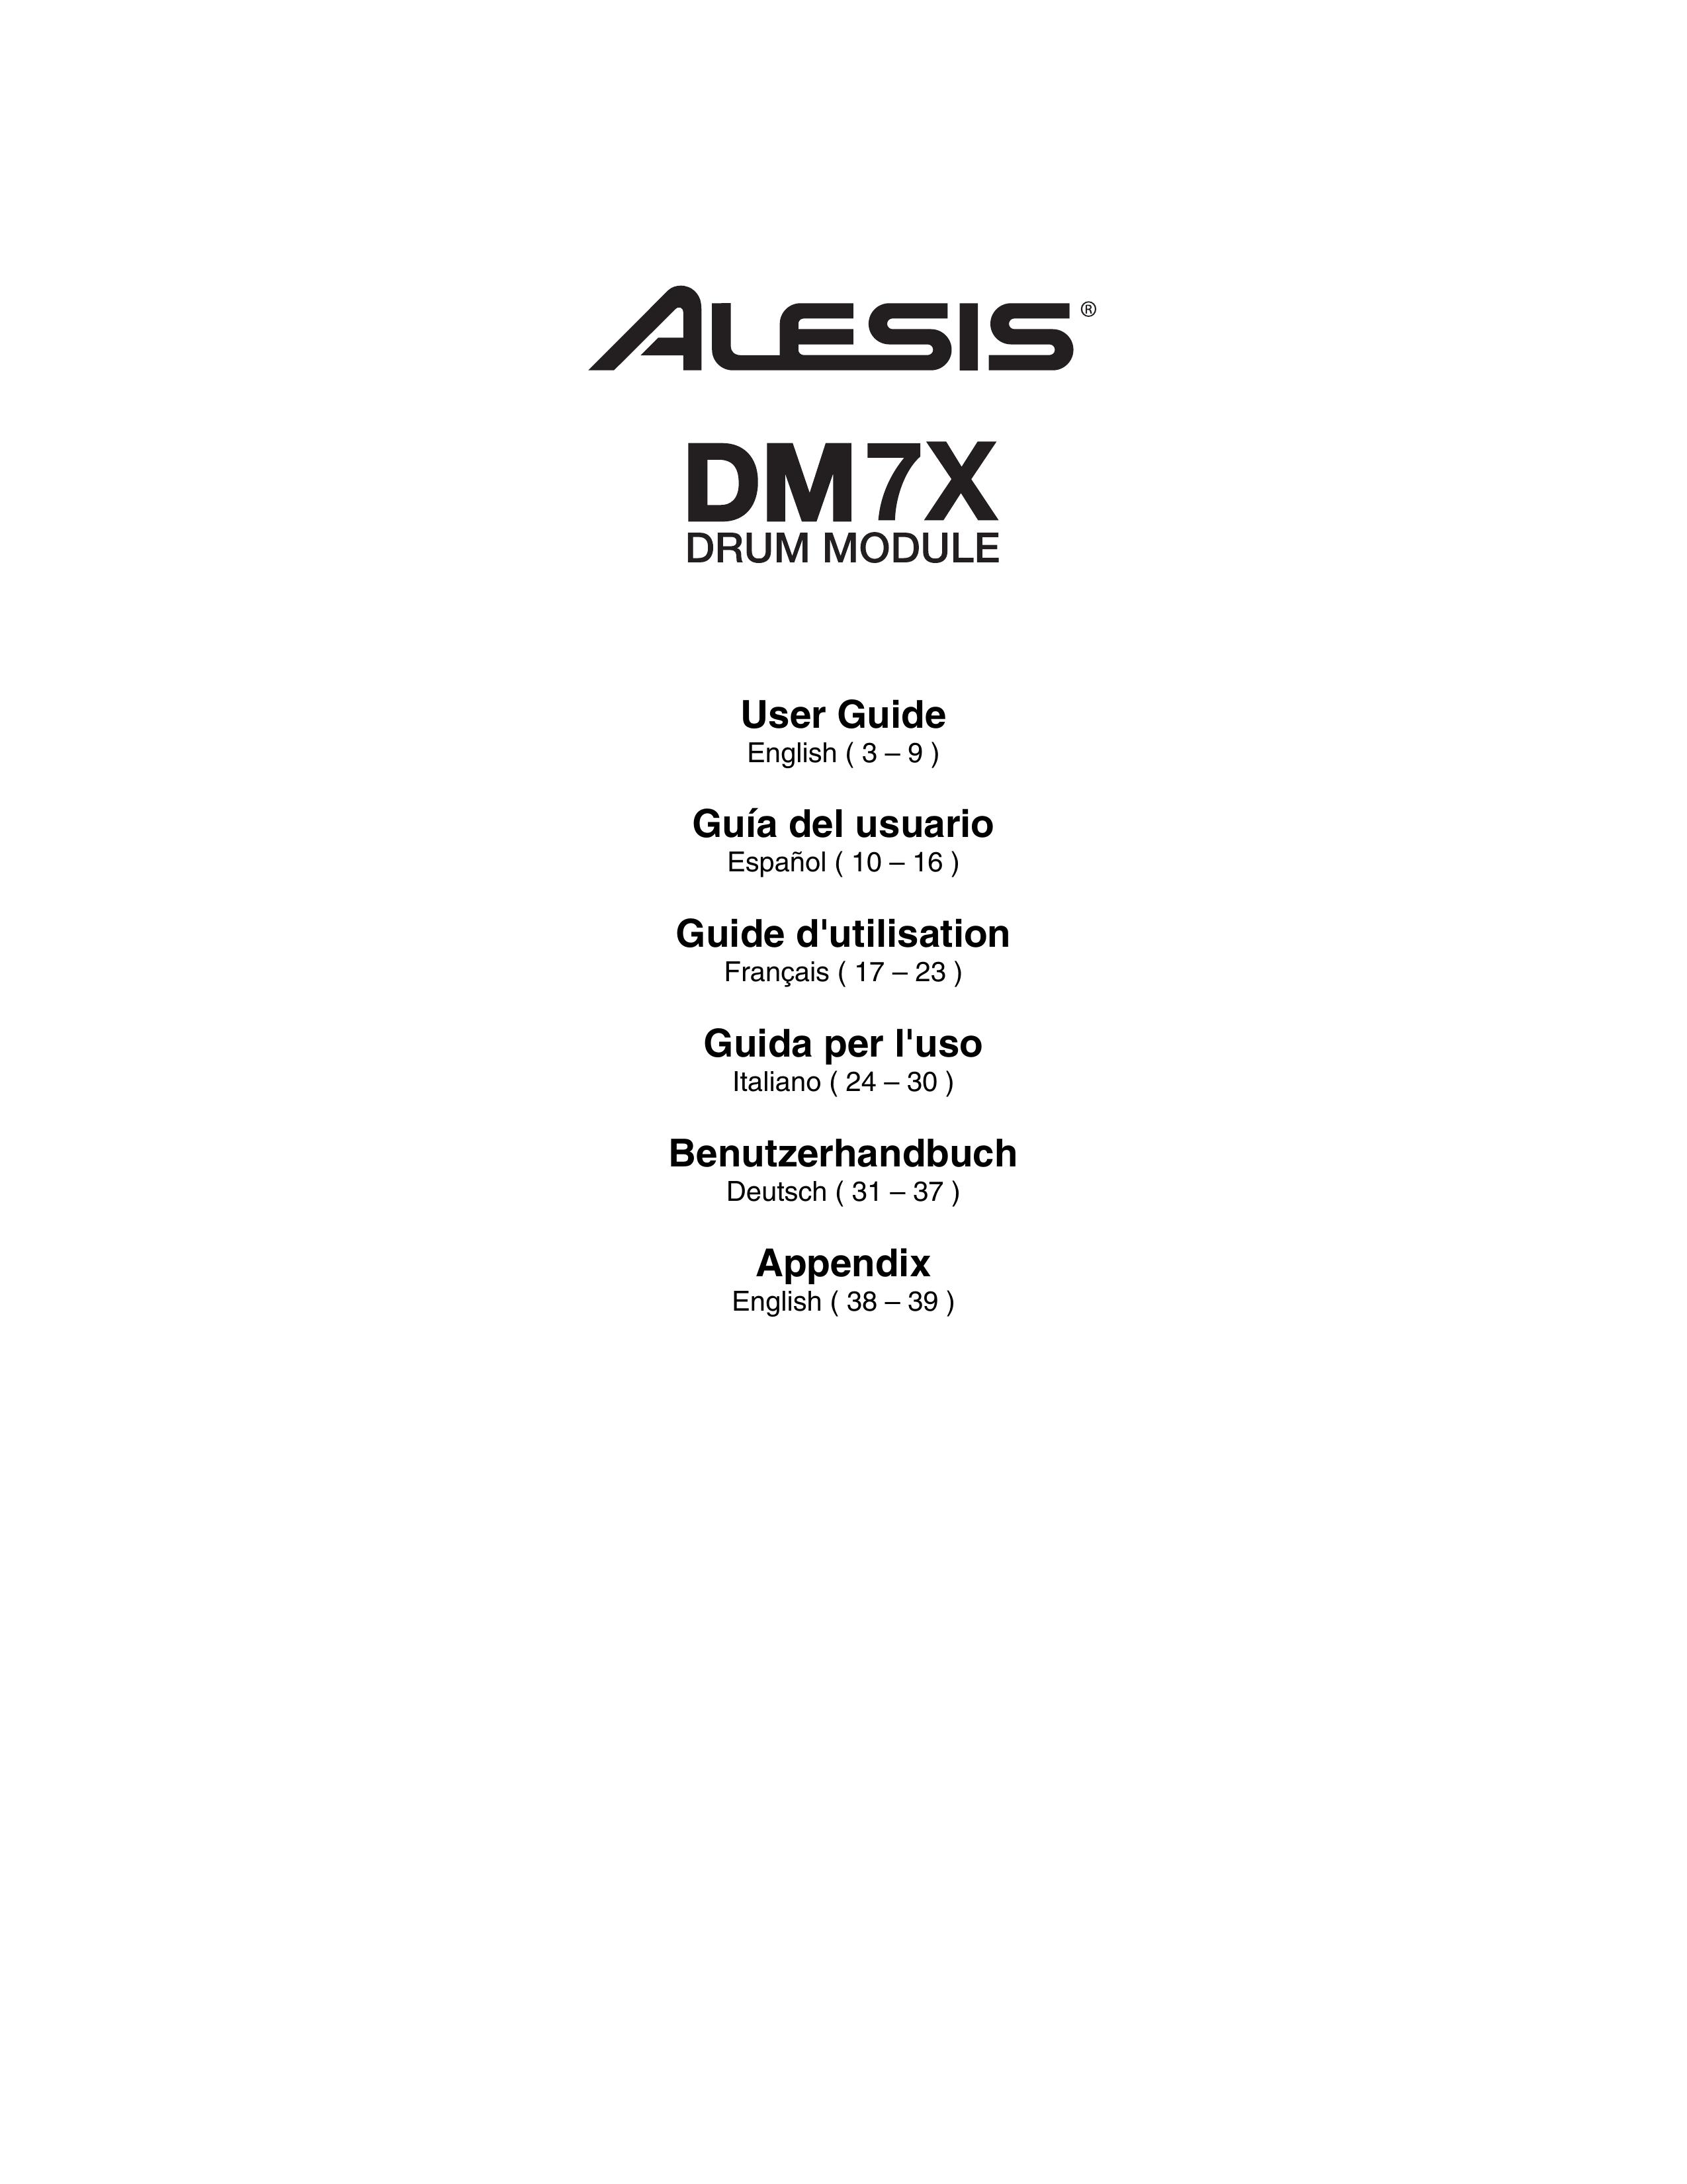 Alesis DM7X Drums User Manual (Page 1)